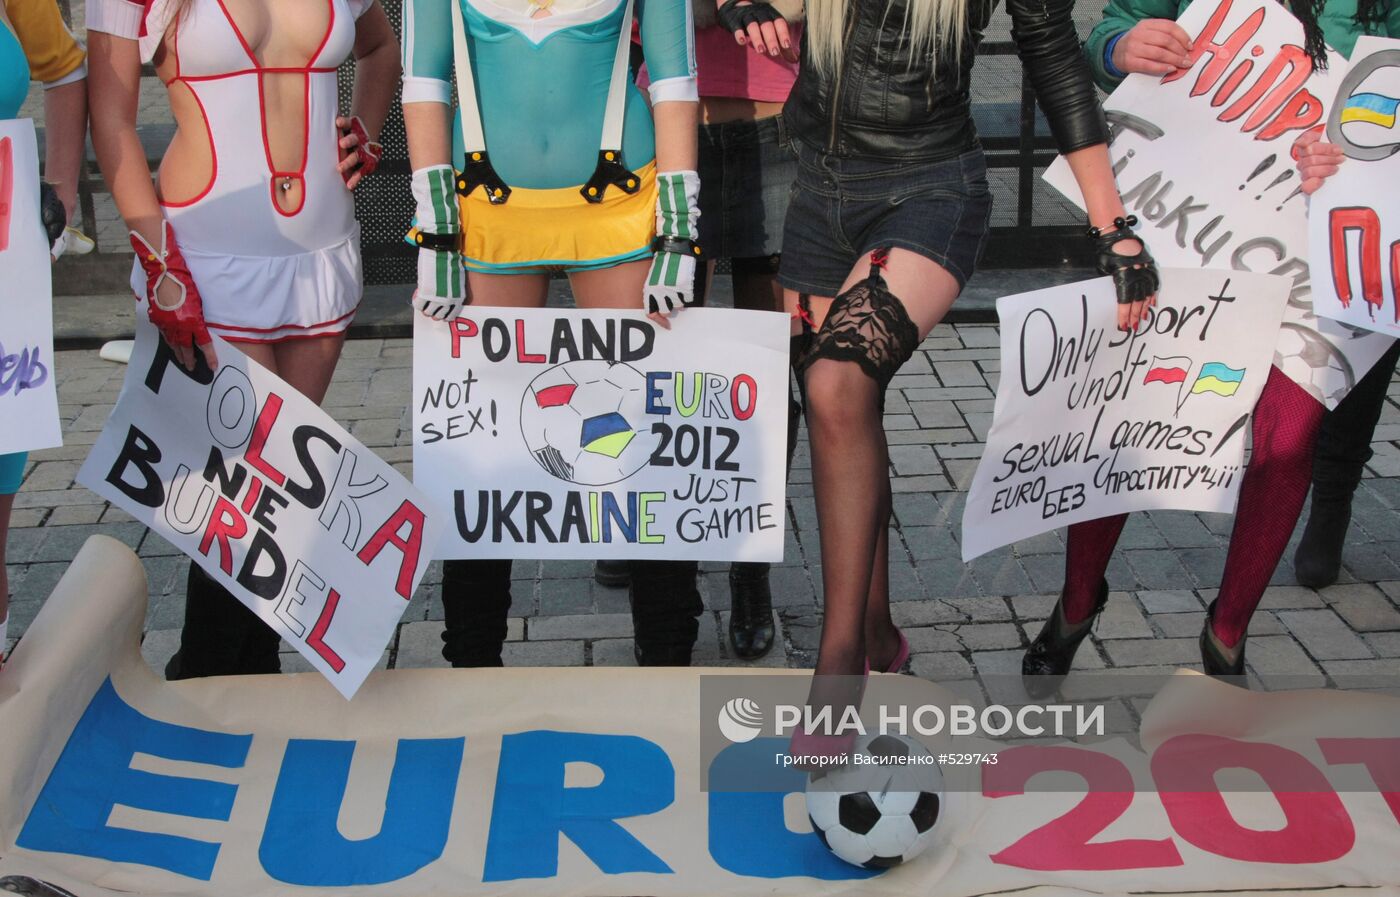 Акция движения FEMEN "Евро 2012 - без проституции!" в Киеве